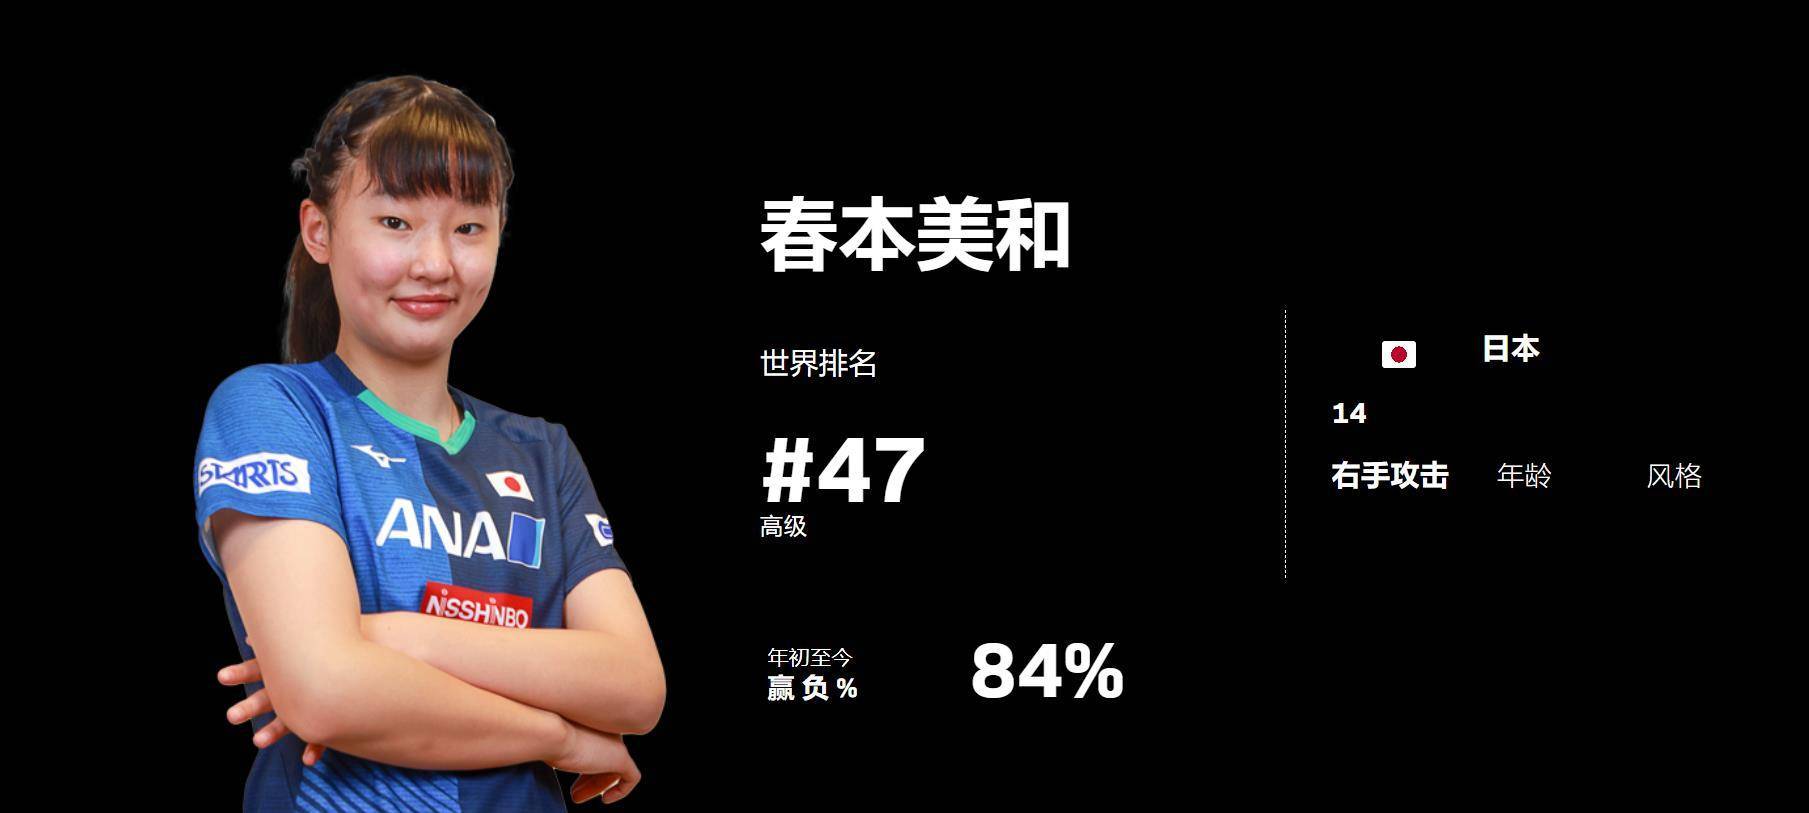 日本乒乓球天才张本妹闯入四强，中国单晓娜获得WTT分赛女单冠军